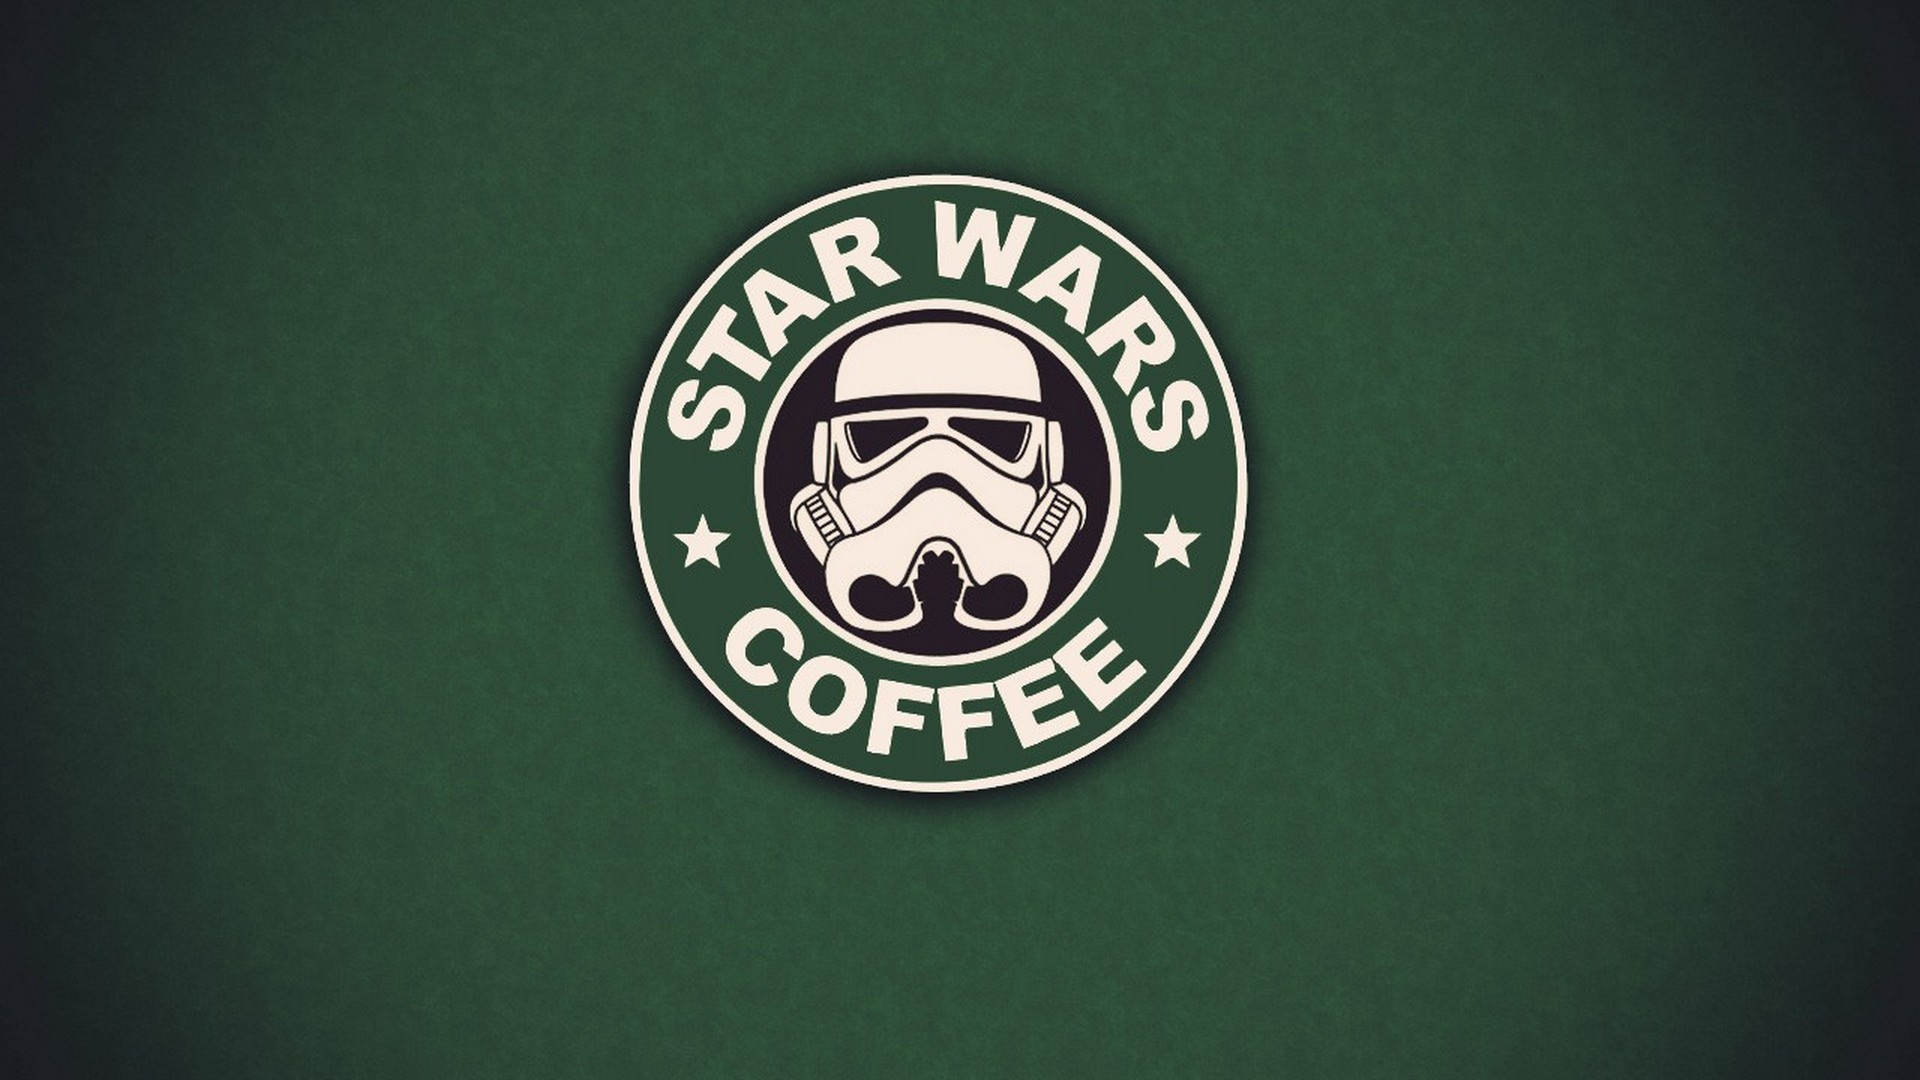 Cute Starbucks Wallpaper Star Wars 1920x1080